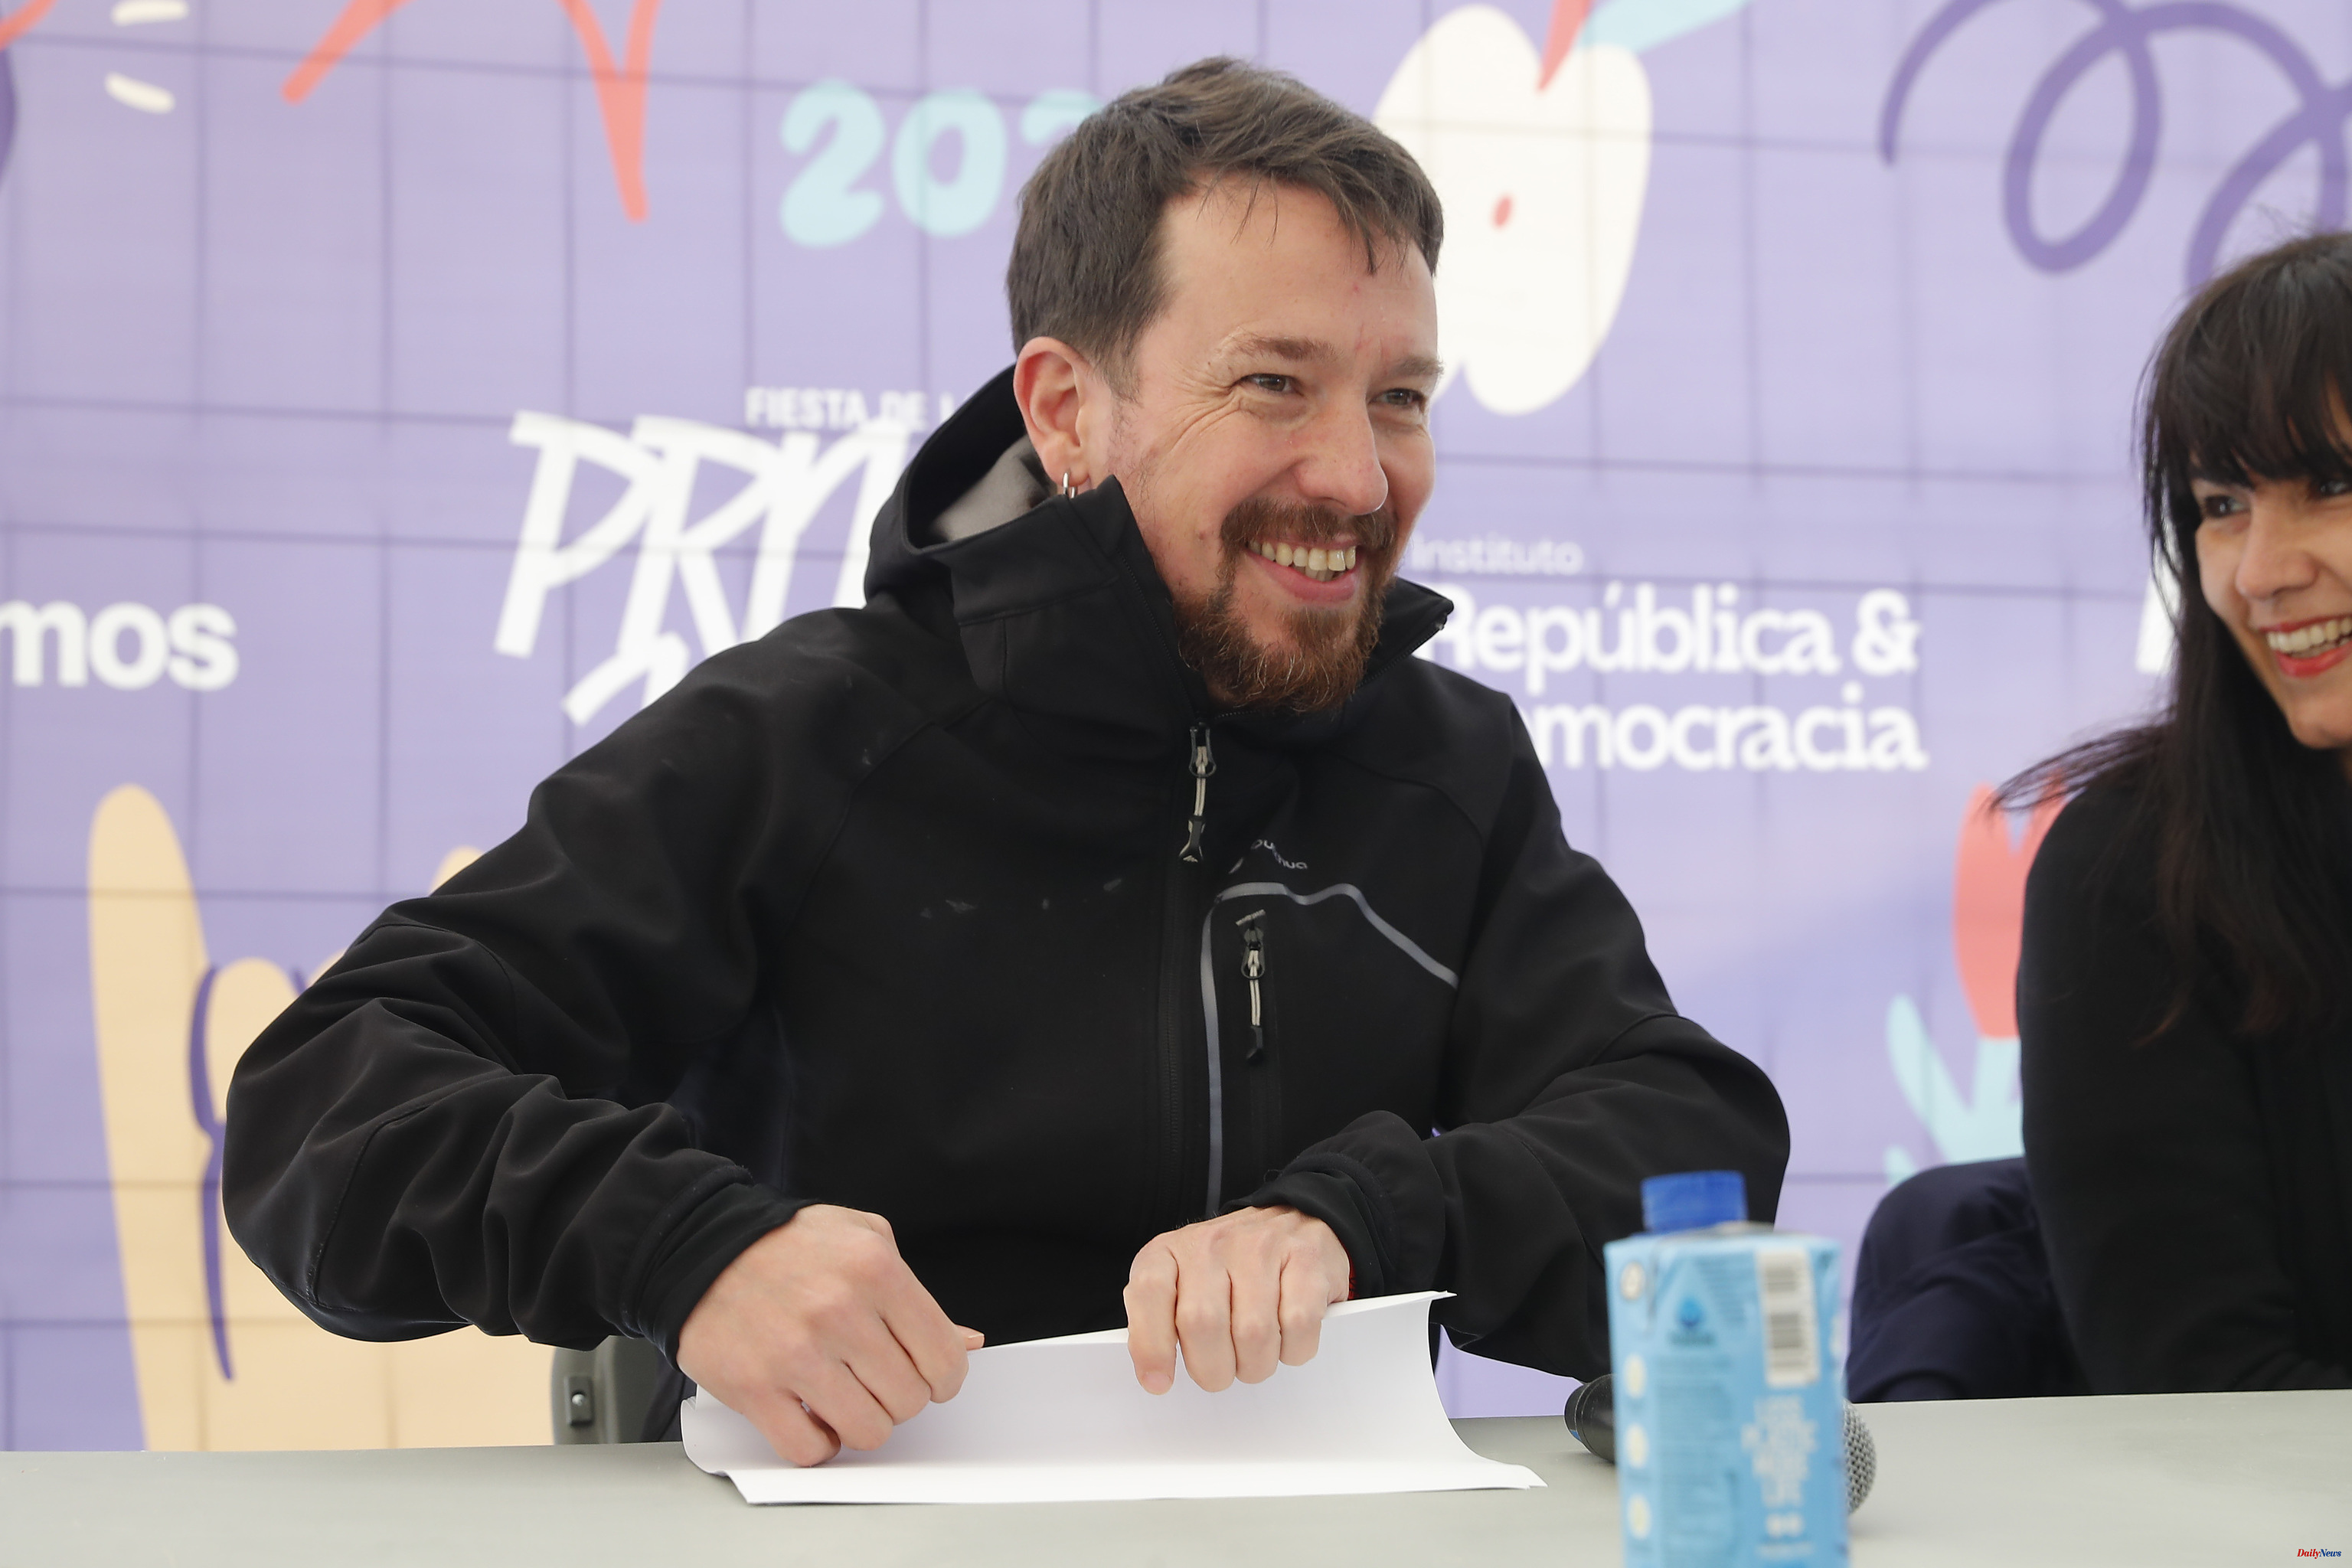 Podemos Iglesias "reaches out" to Yolanda Díaz "despite the insults, neglect and contempt"